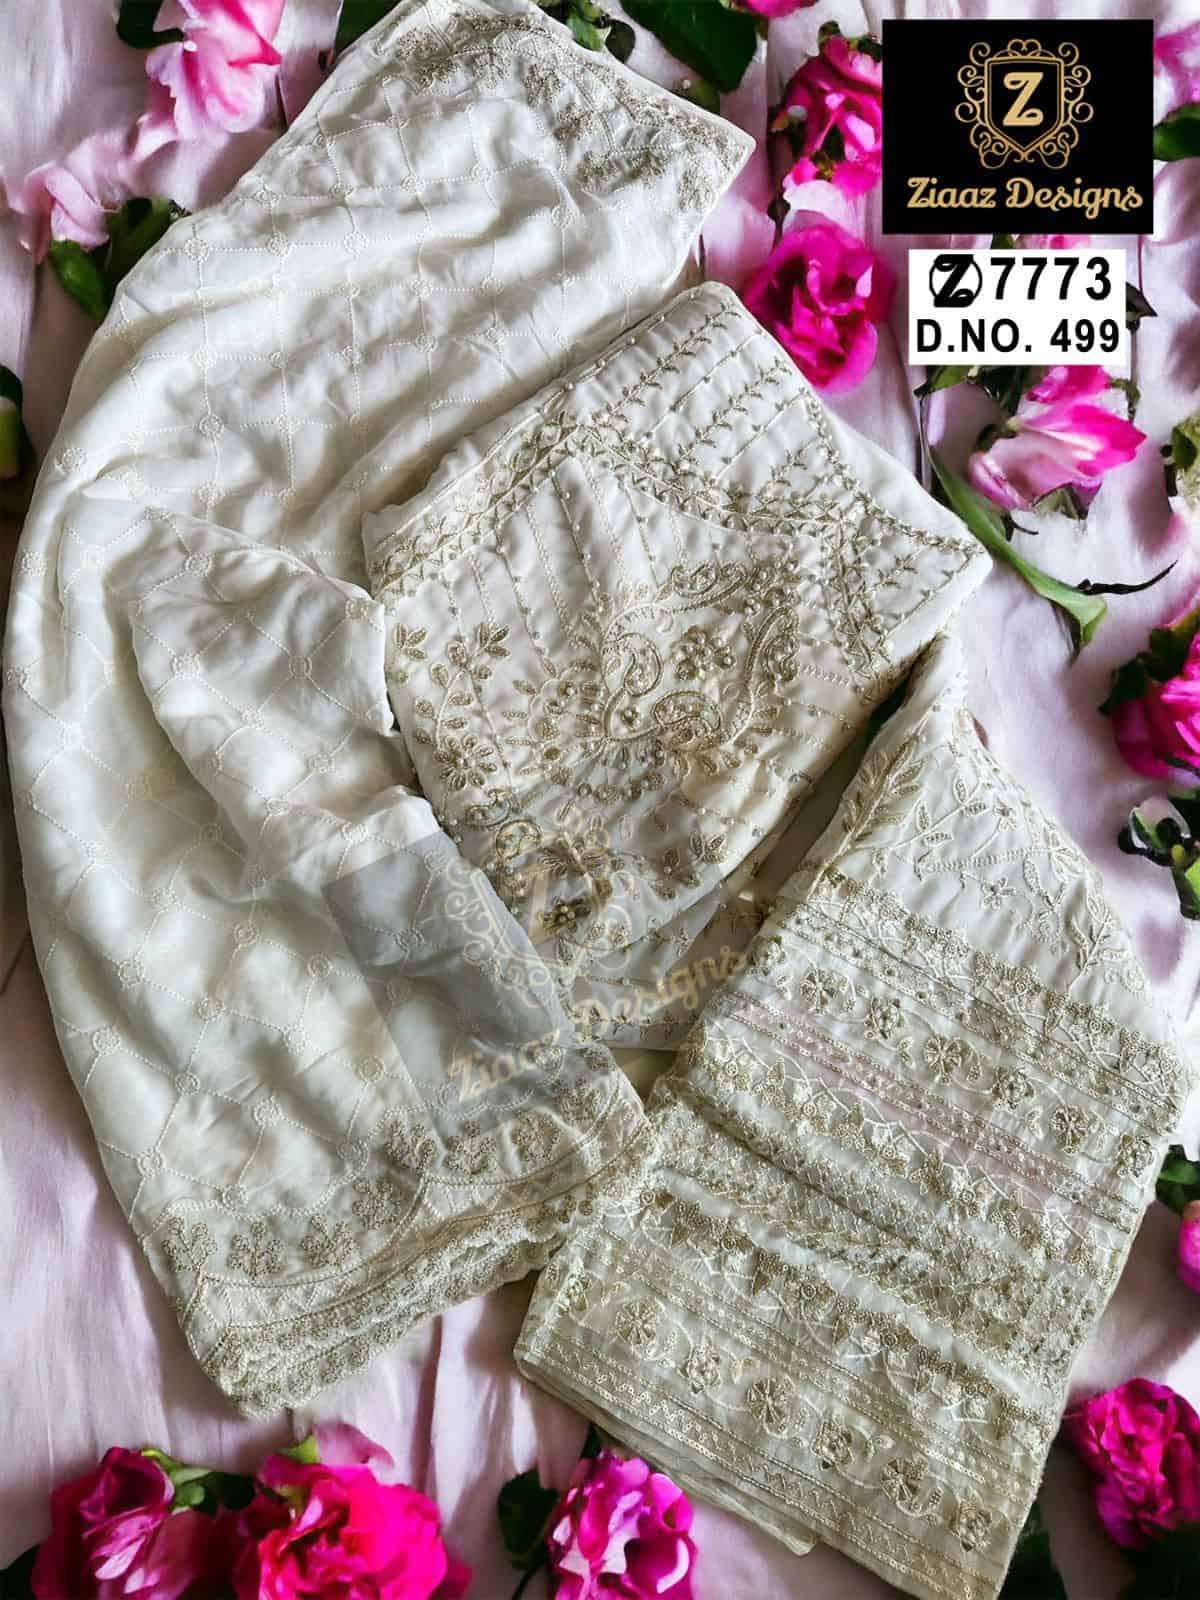 Ziaaz Designs 499 Festive Wear Style Designer Pakistani Dress Online Supplier